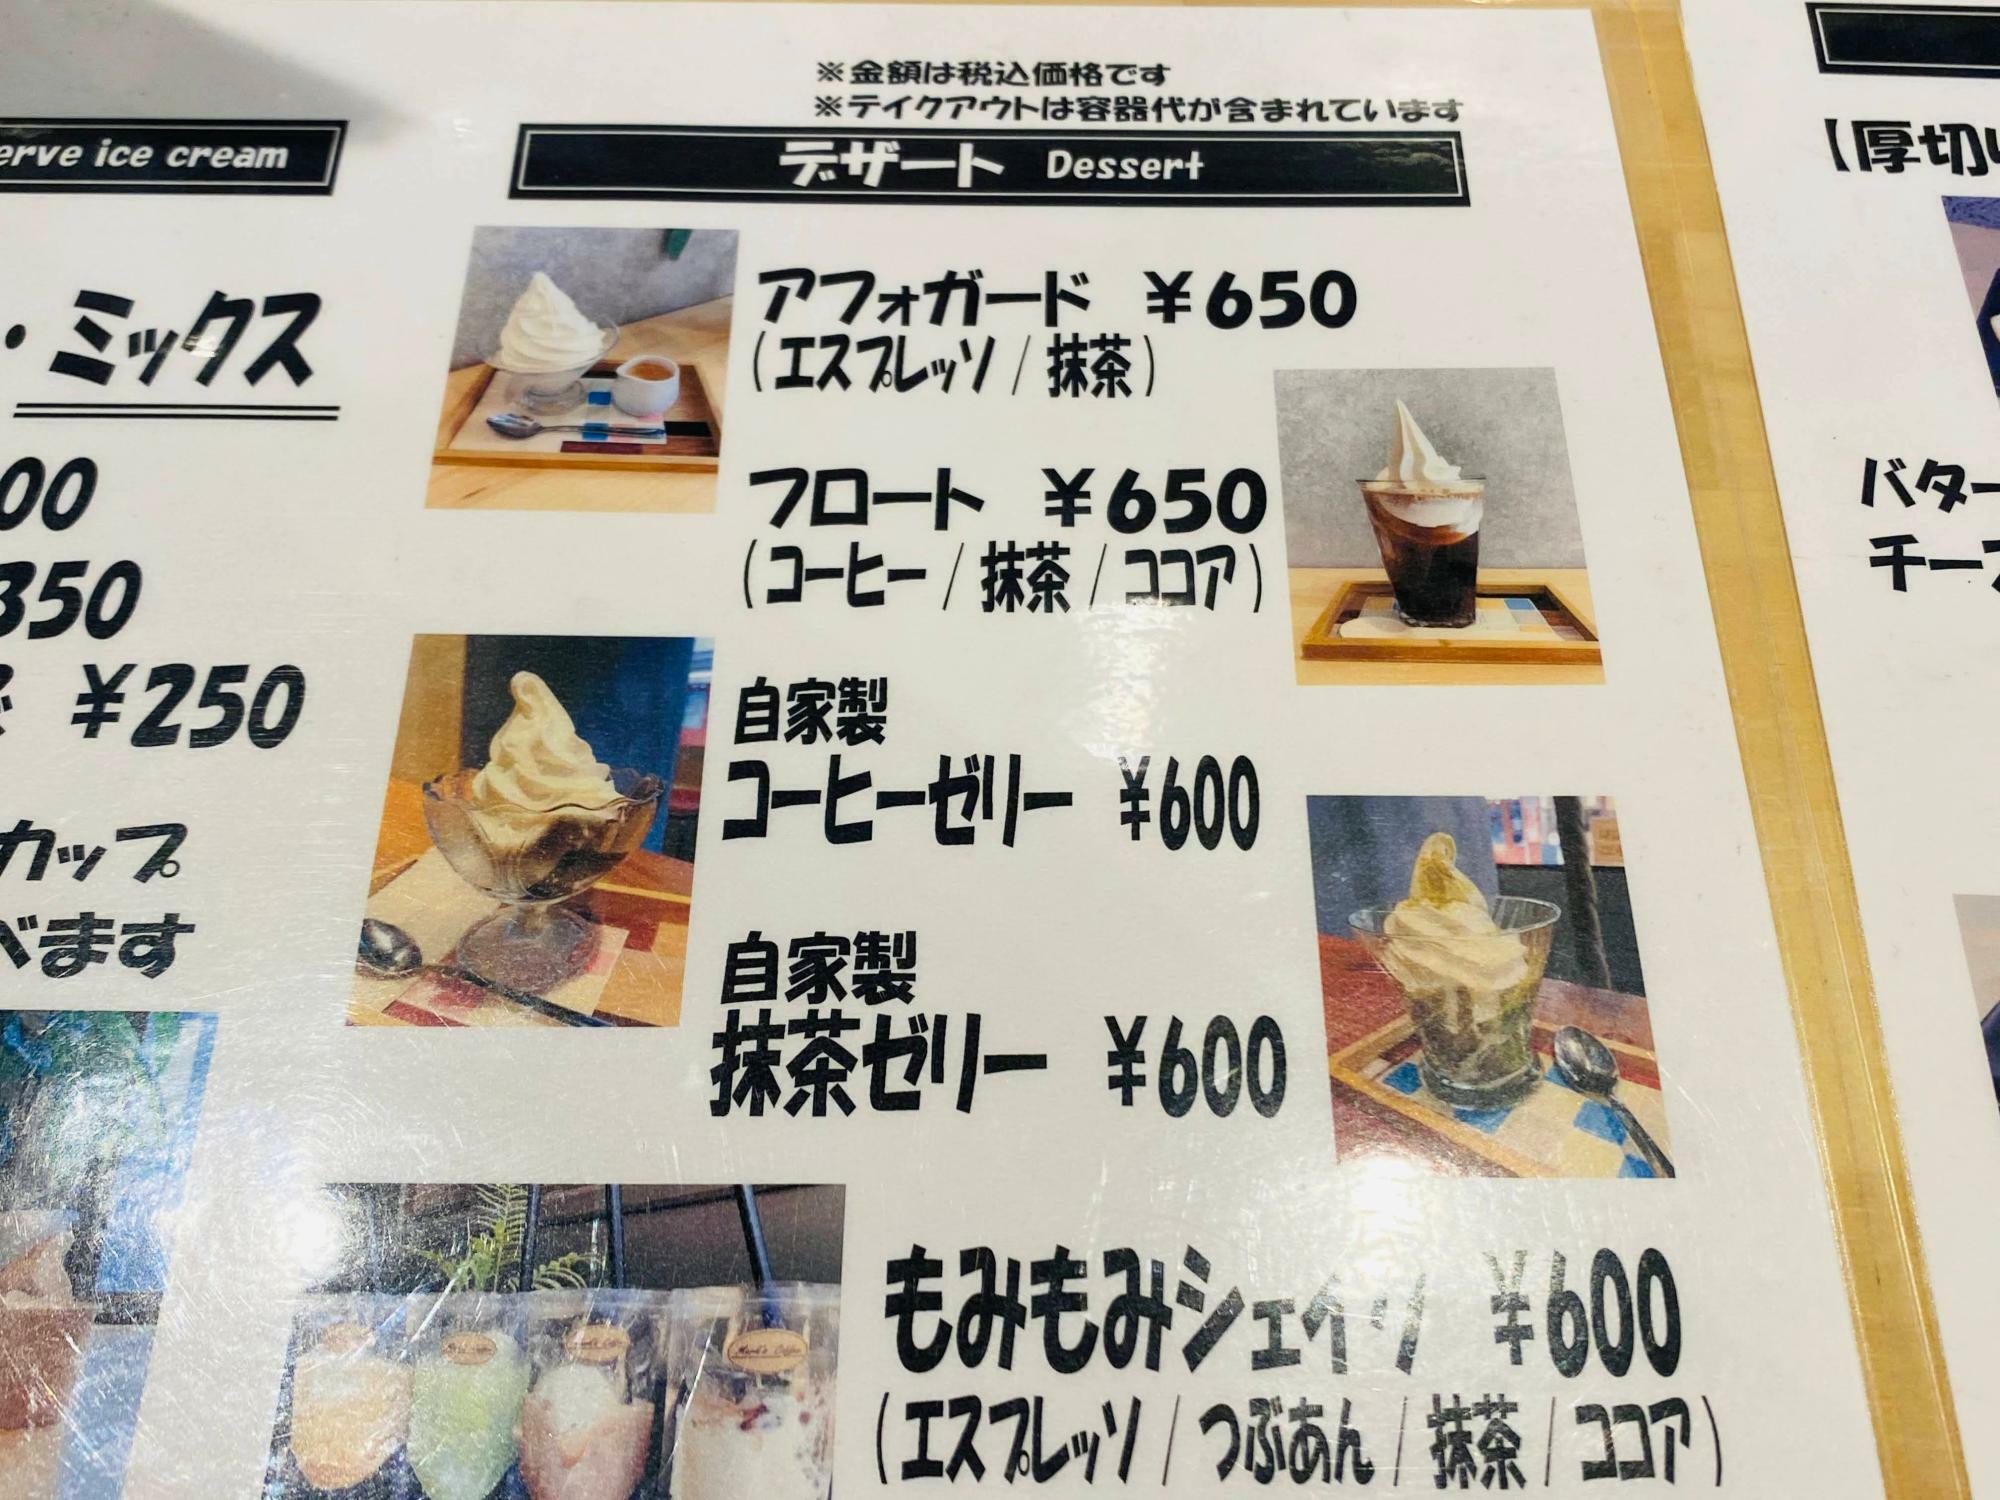 おすすめの「自家製コーヒーゼリー」は600円